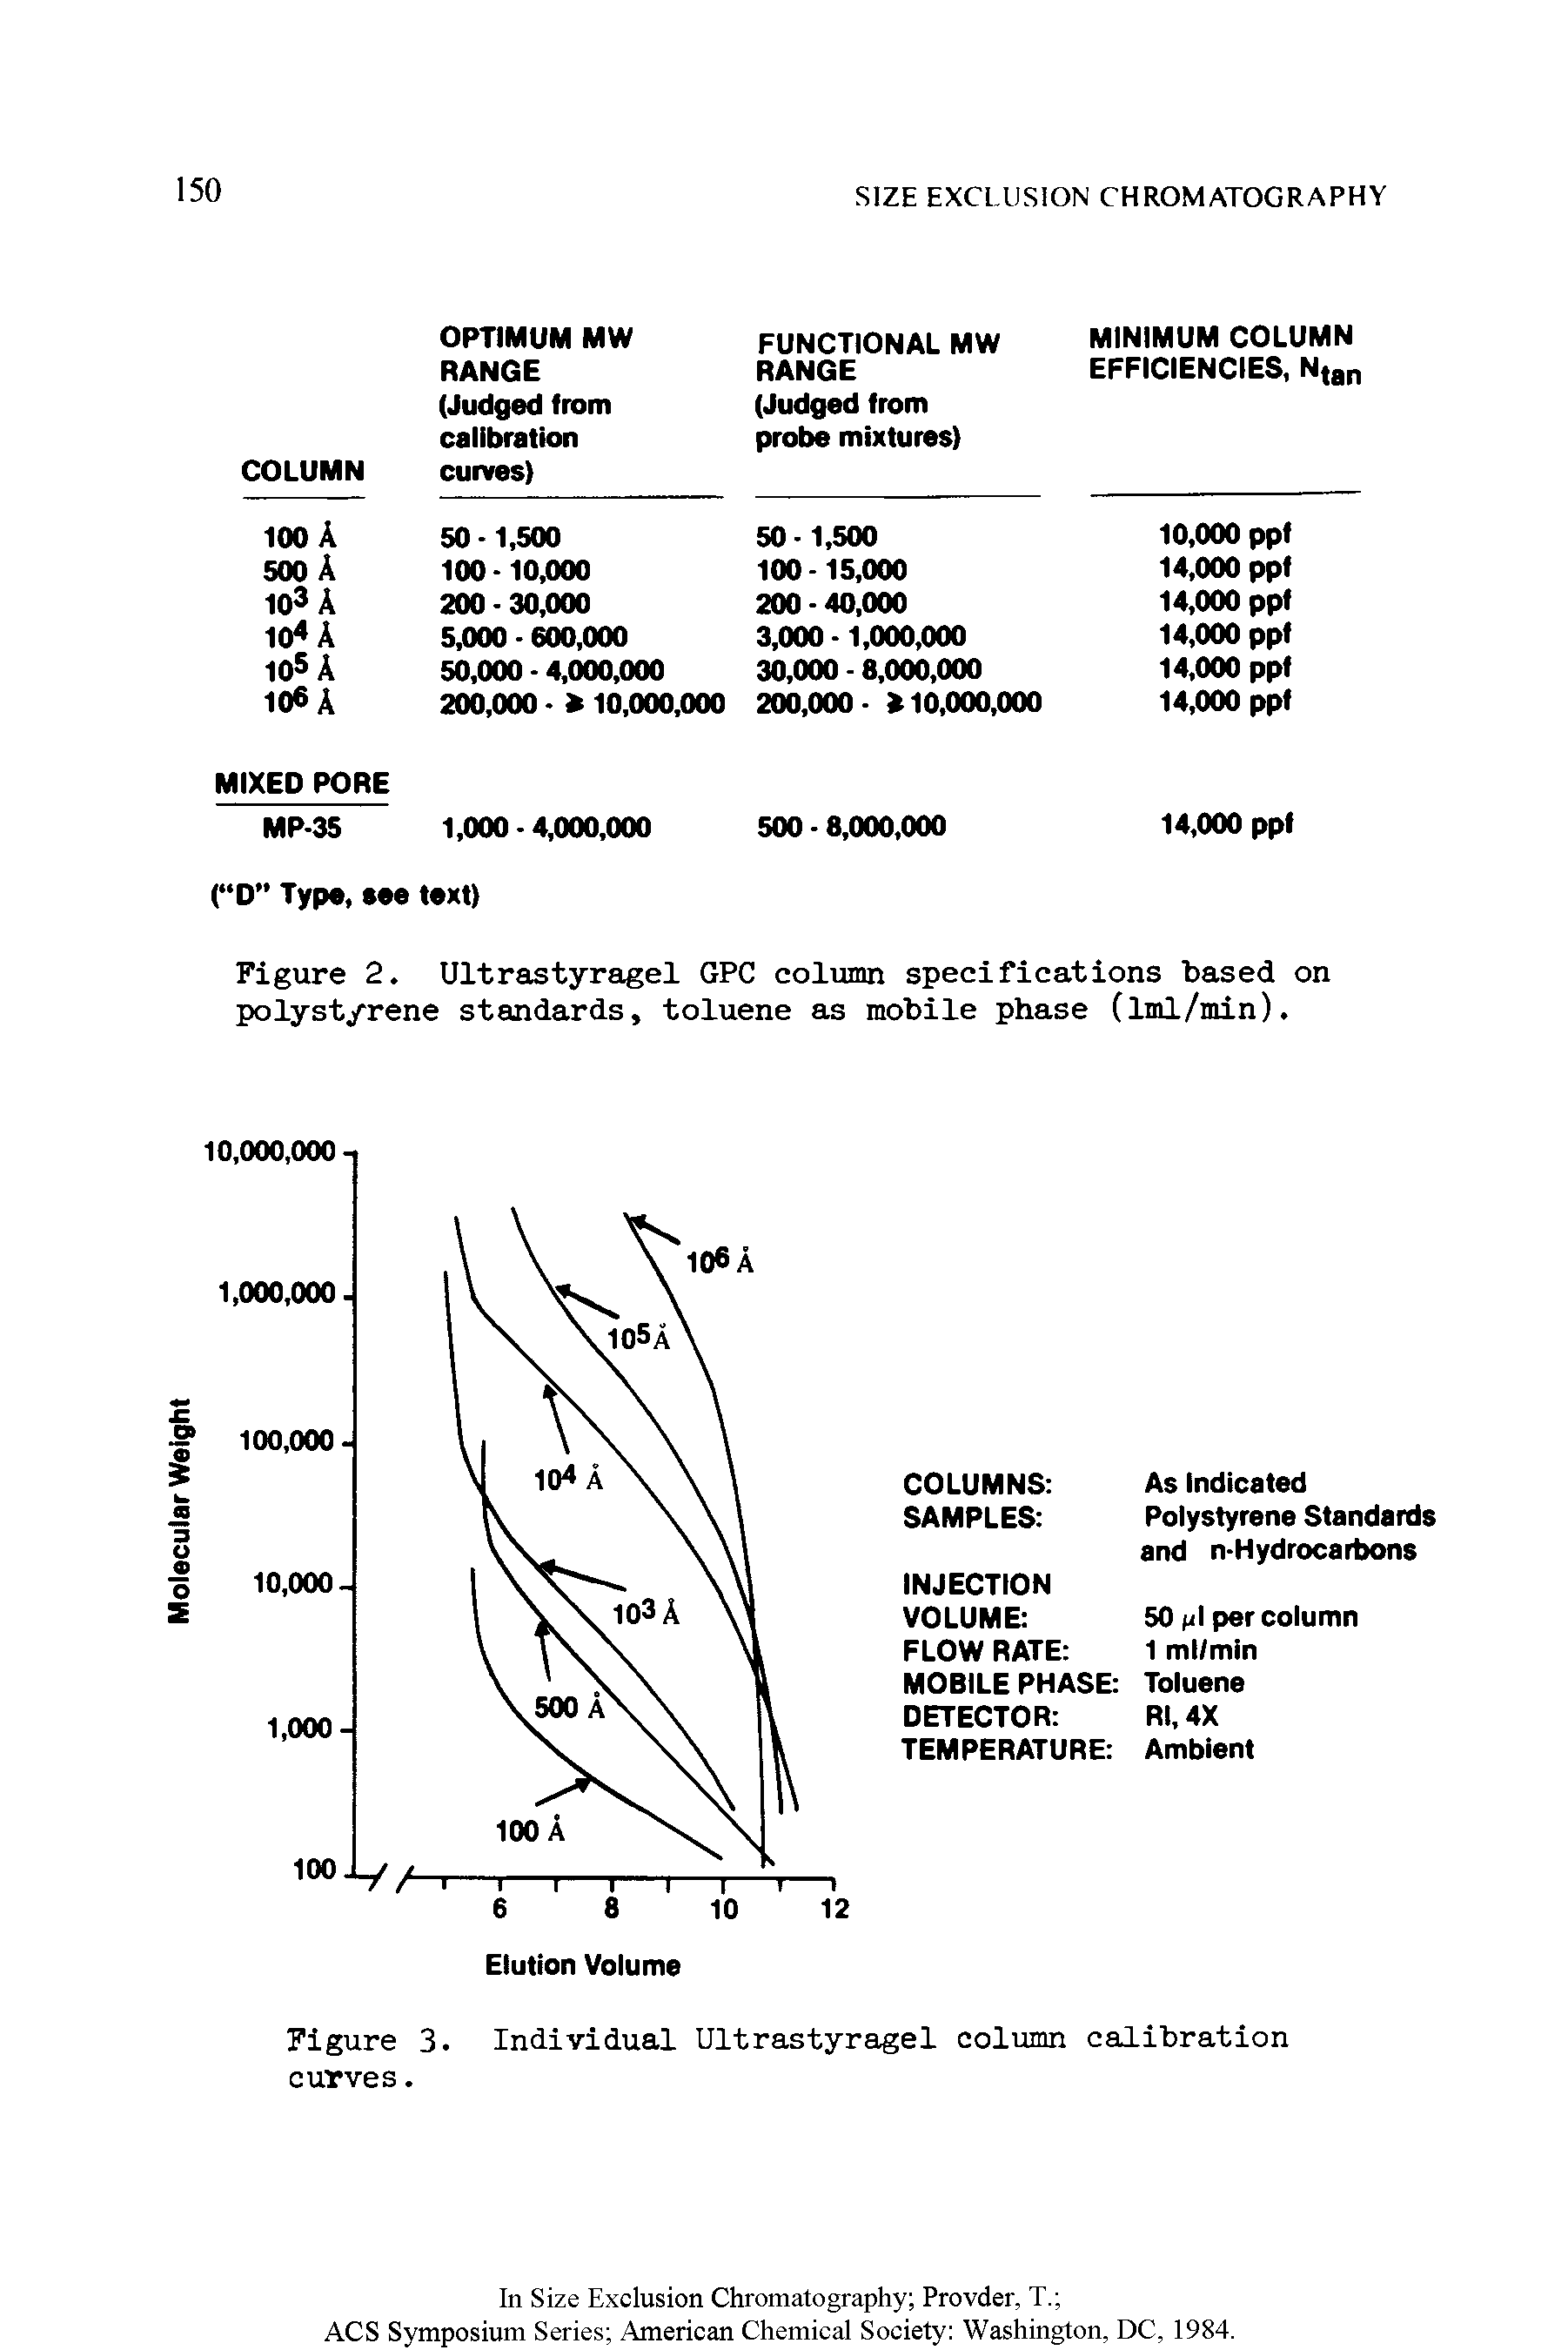 Figure 2. Ultrastyragel GPC column specifications based on polystyrene standards, toluene as mobile phase (iml/min).